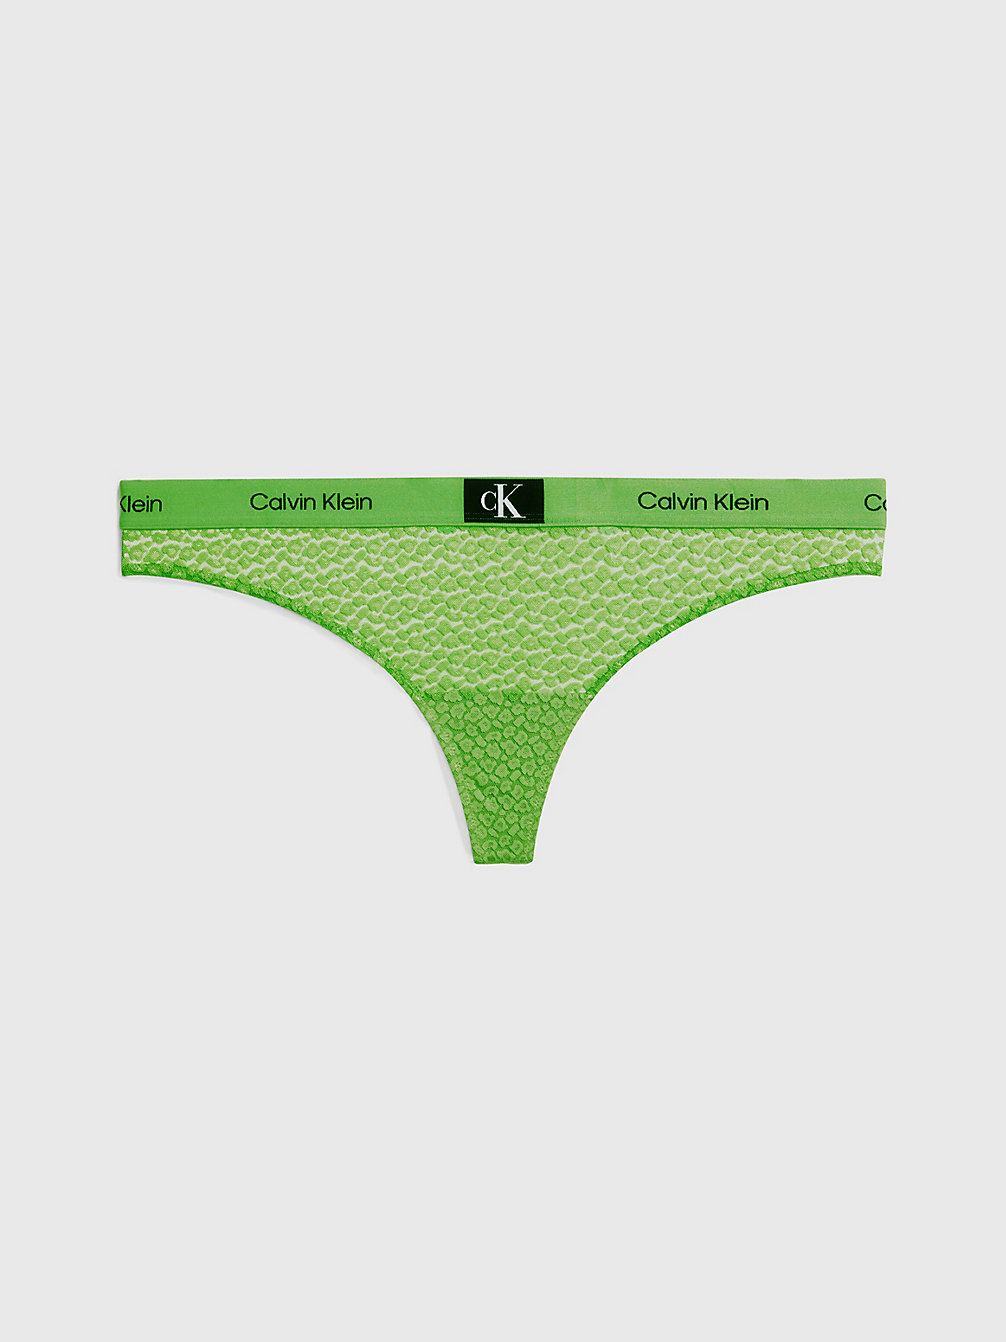 FABULOUS GREEN > String In Großen Größen - Ck96 > undefined Damen - Calvin Klein